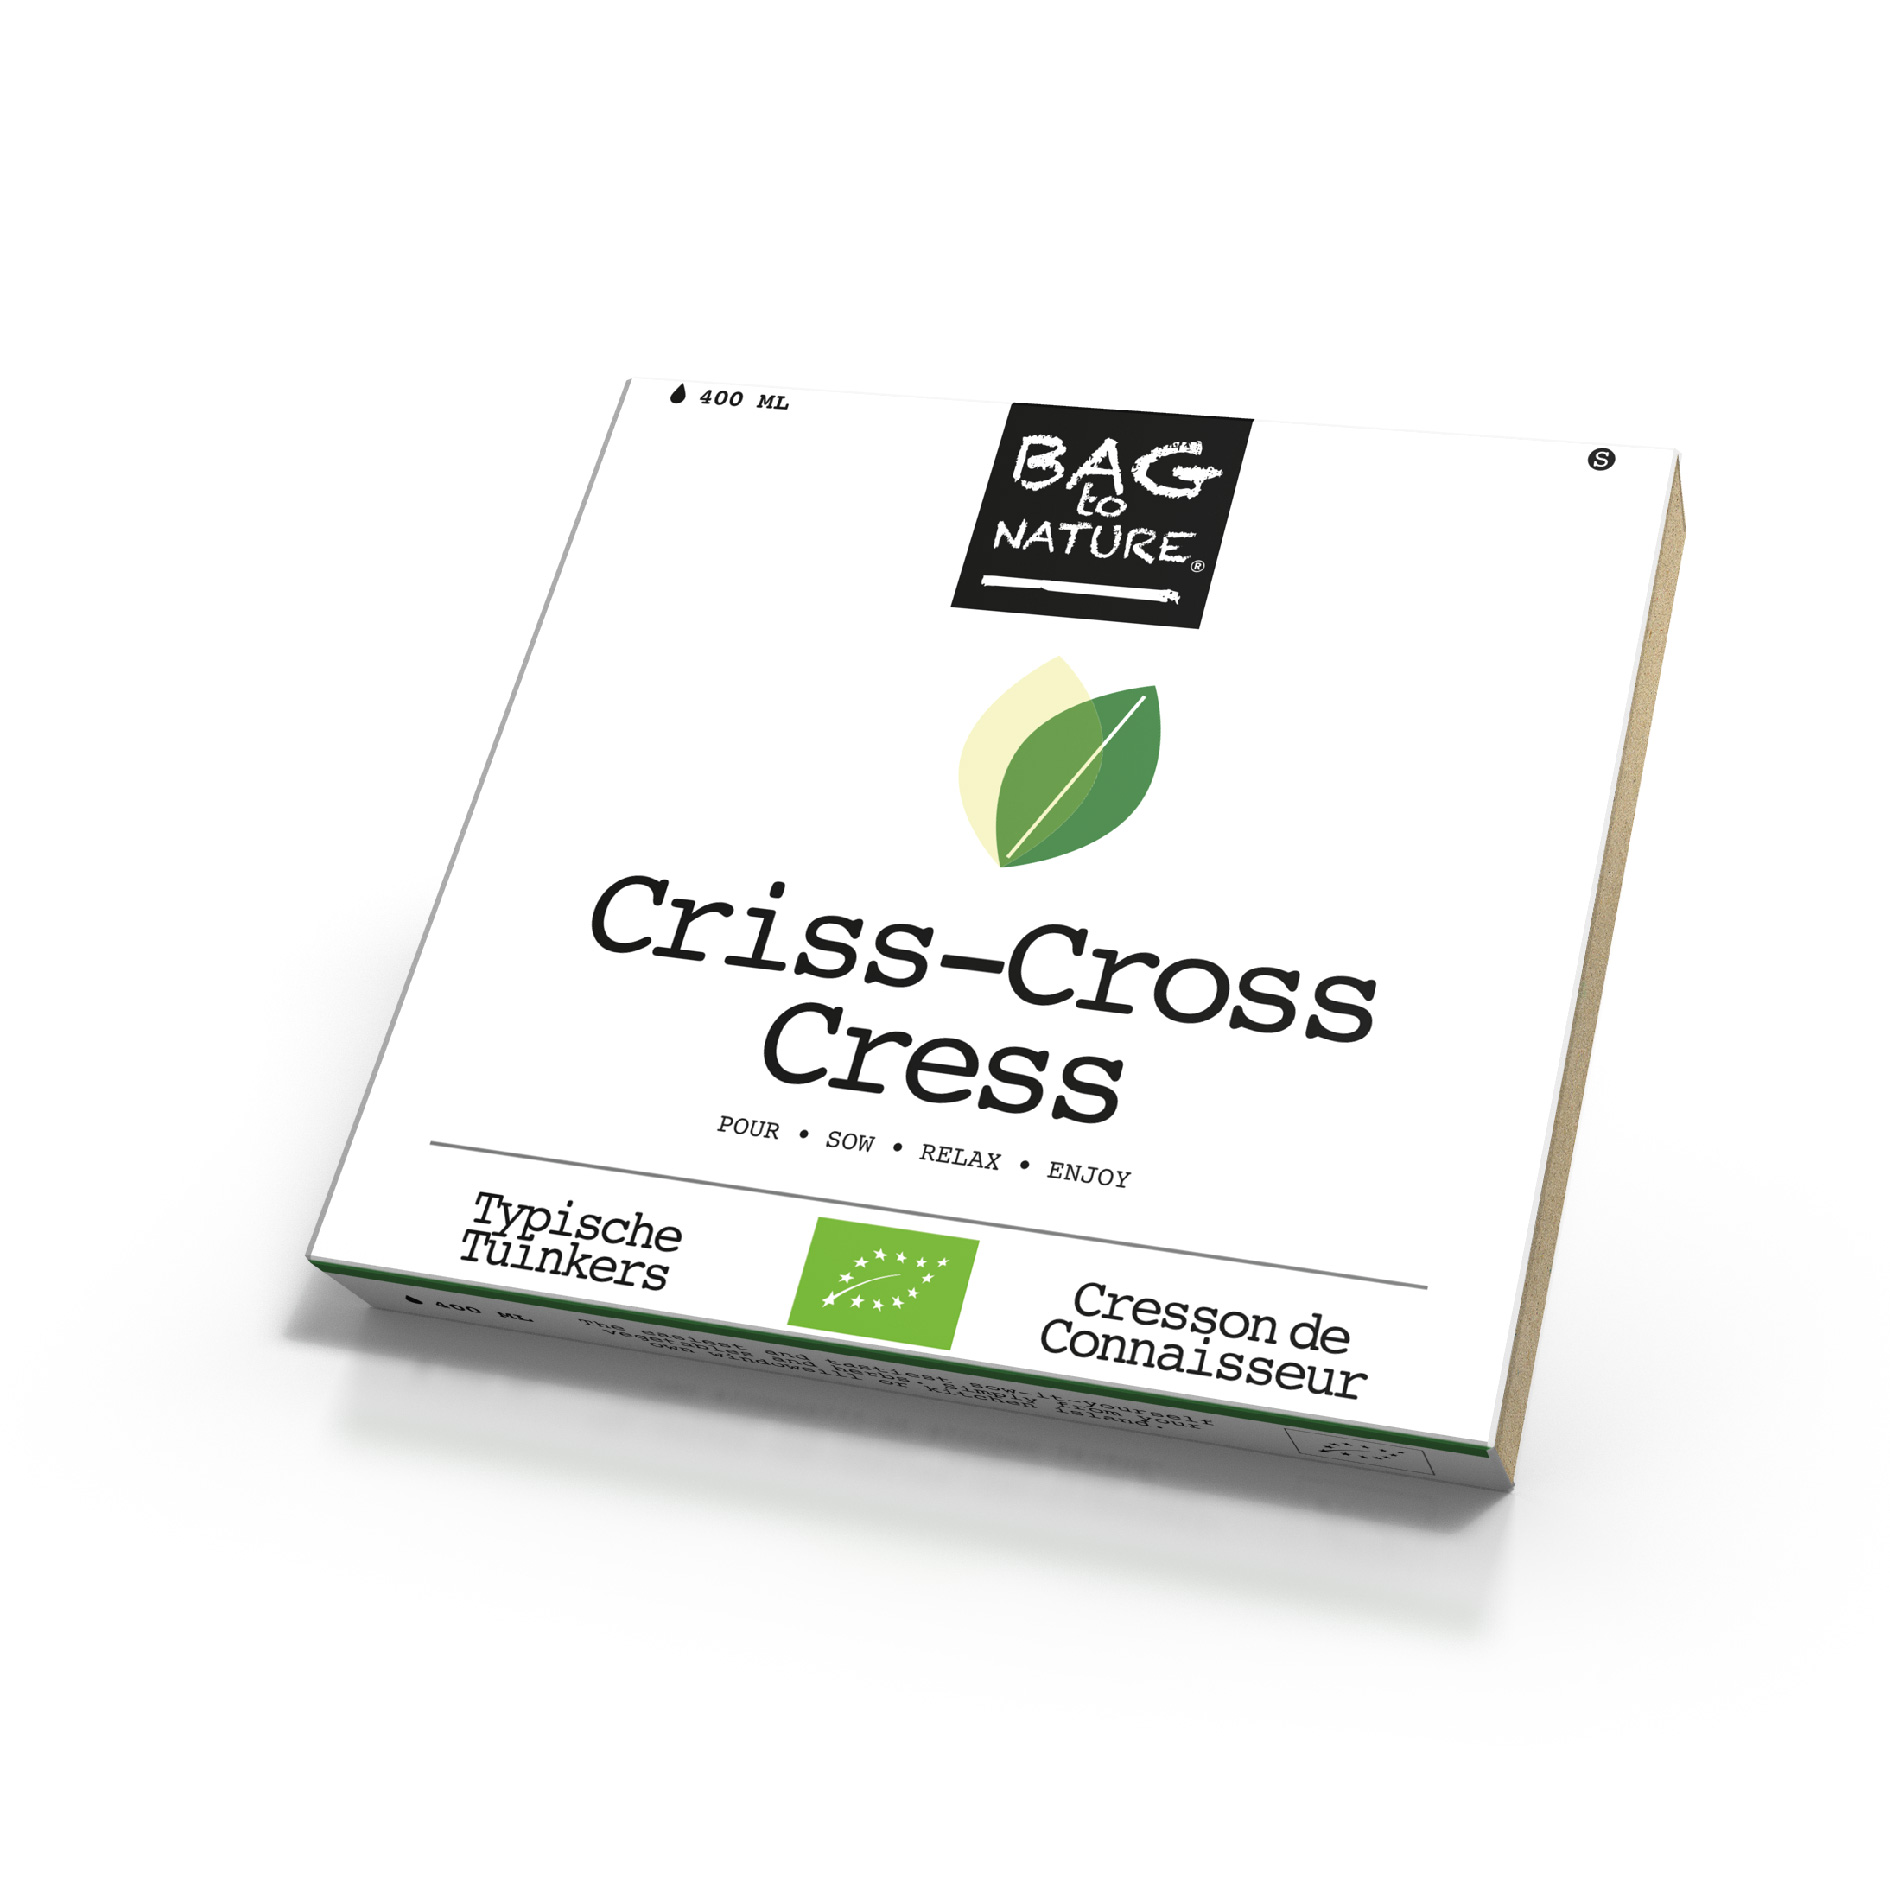  Criss-Cross Cress